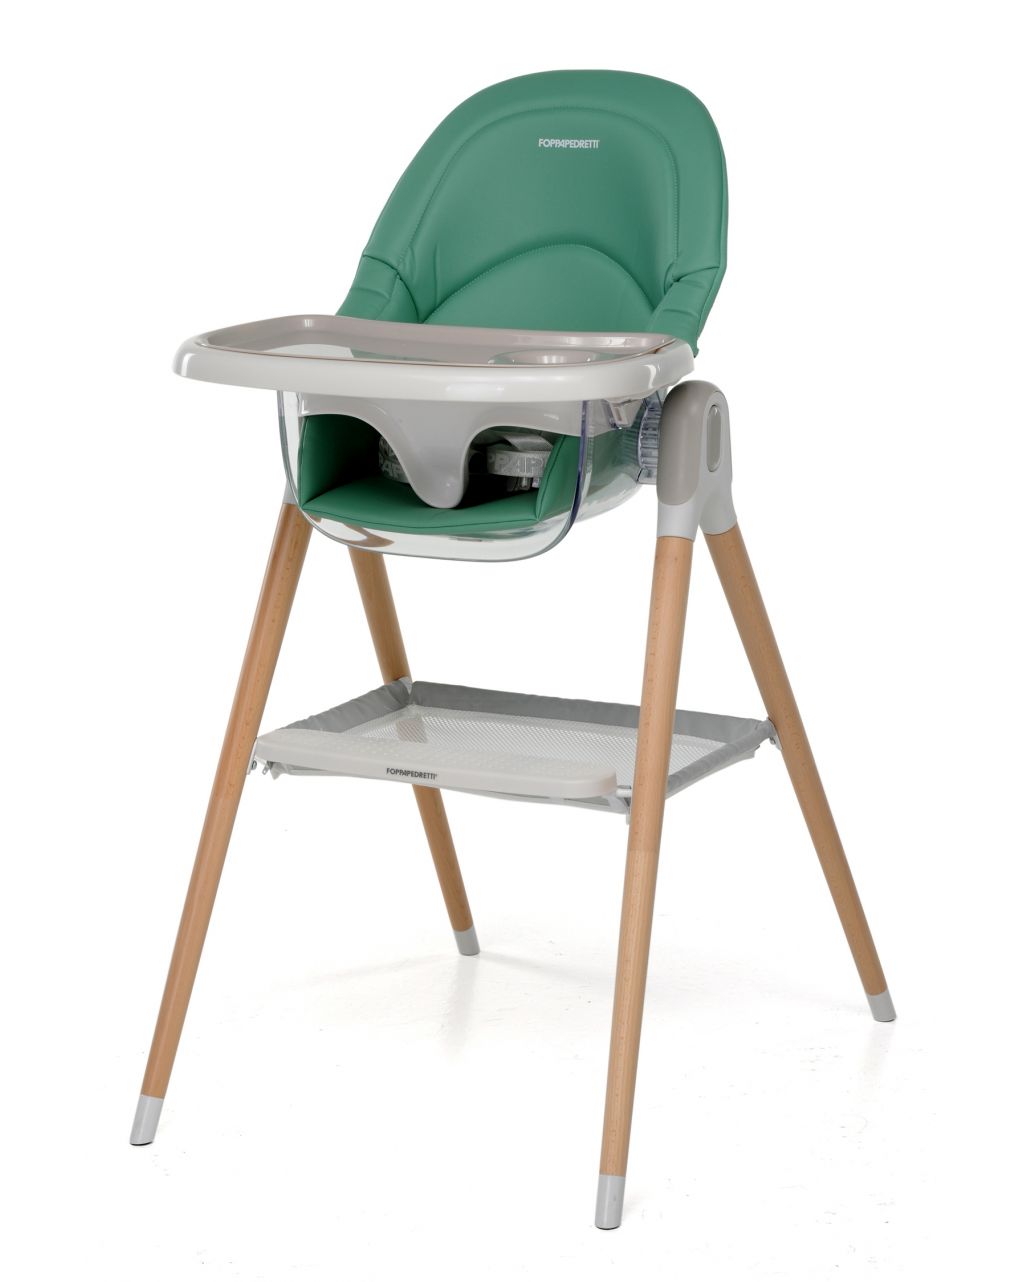 Seggiolone/baby sedia 2 in 1 bonito green - foppapedretti - Foppapedretti